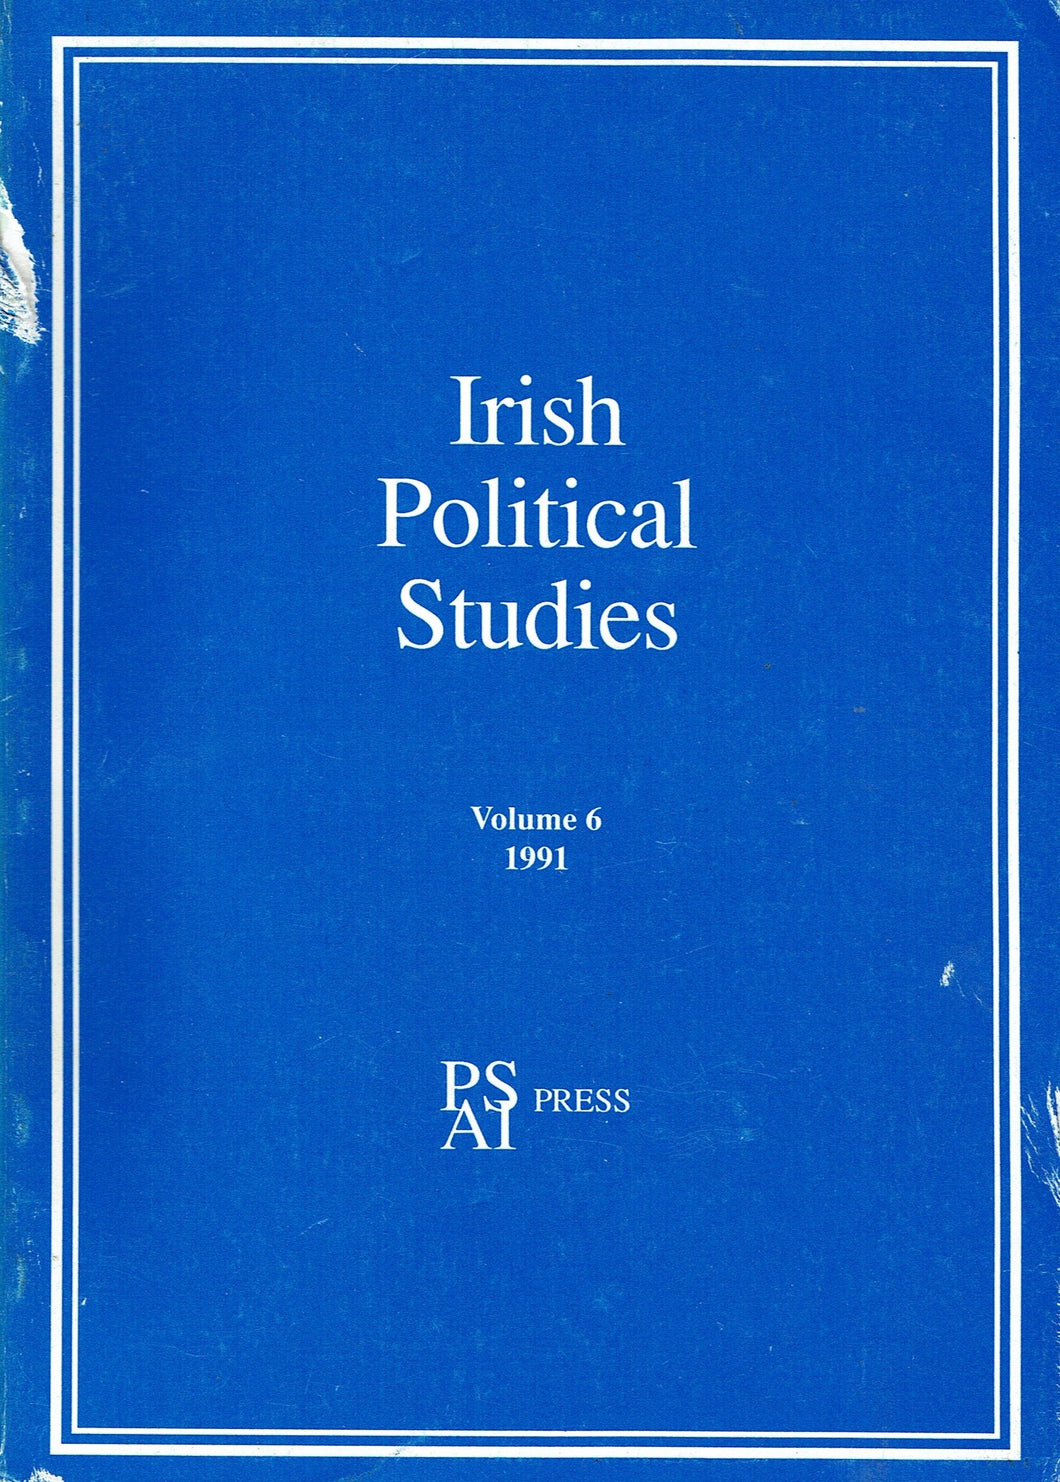 Irish Political Studies - Volume 6, 1991